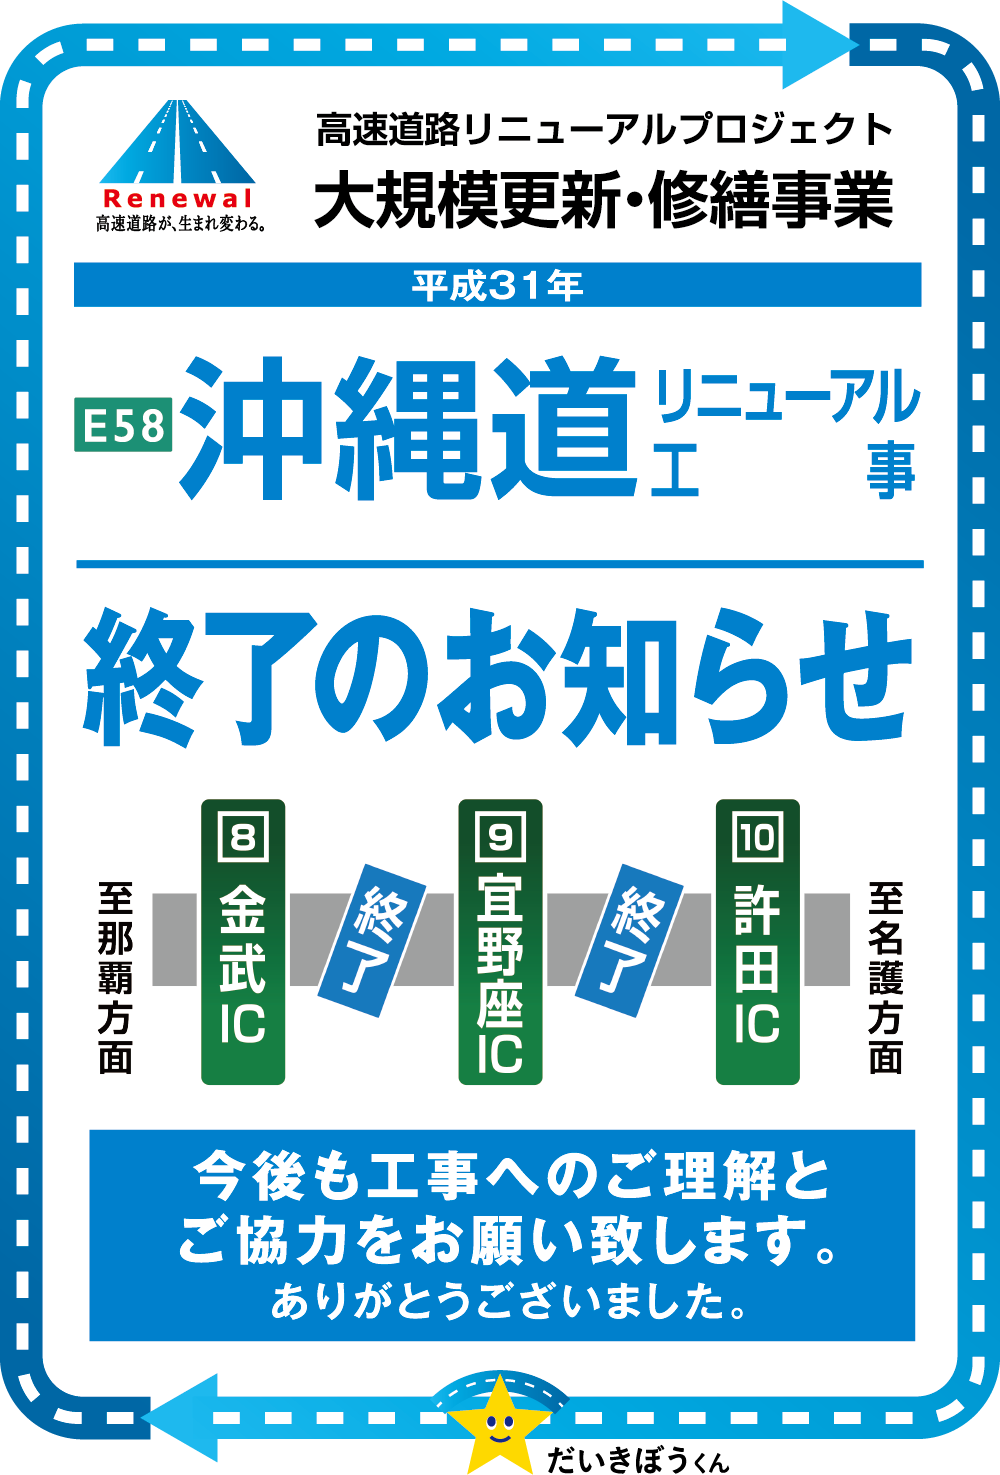 終日対面通行規制をいたします。沖縄道リニューアル工事。平成29年1/6〜3/31